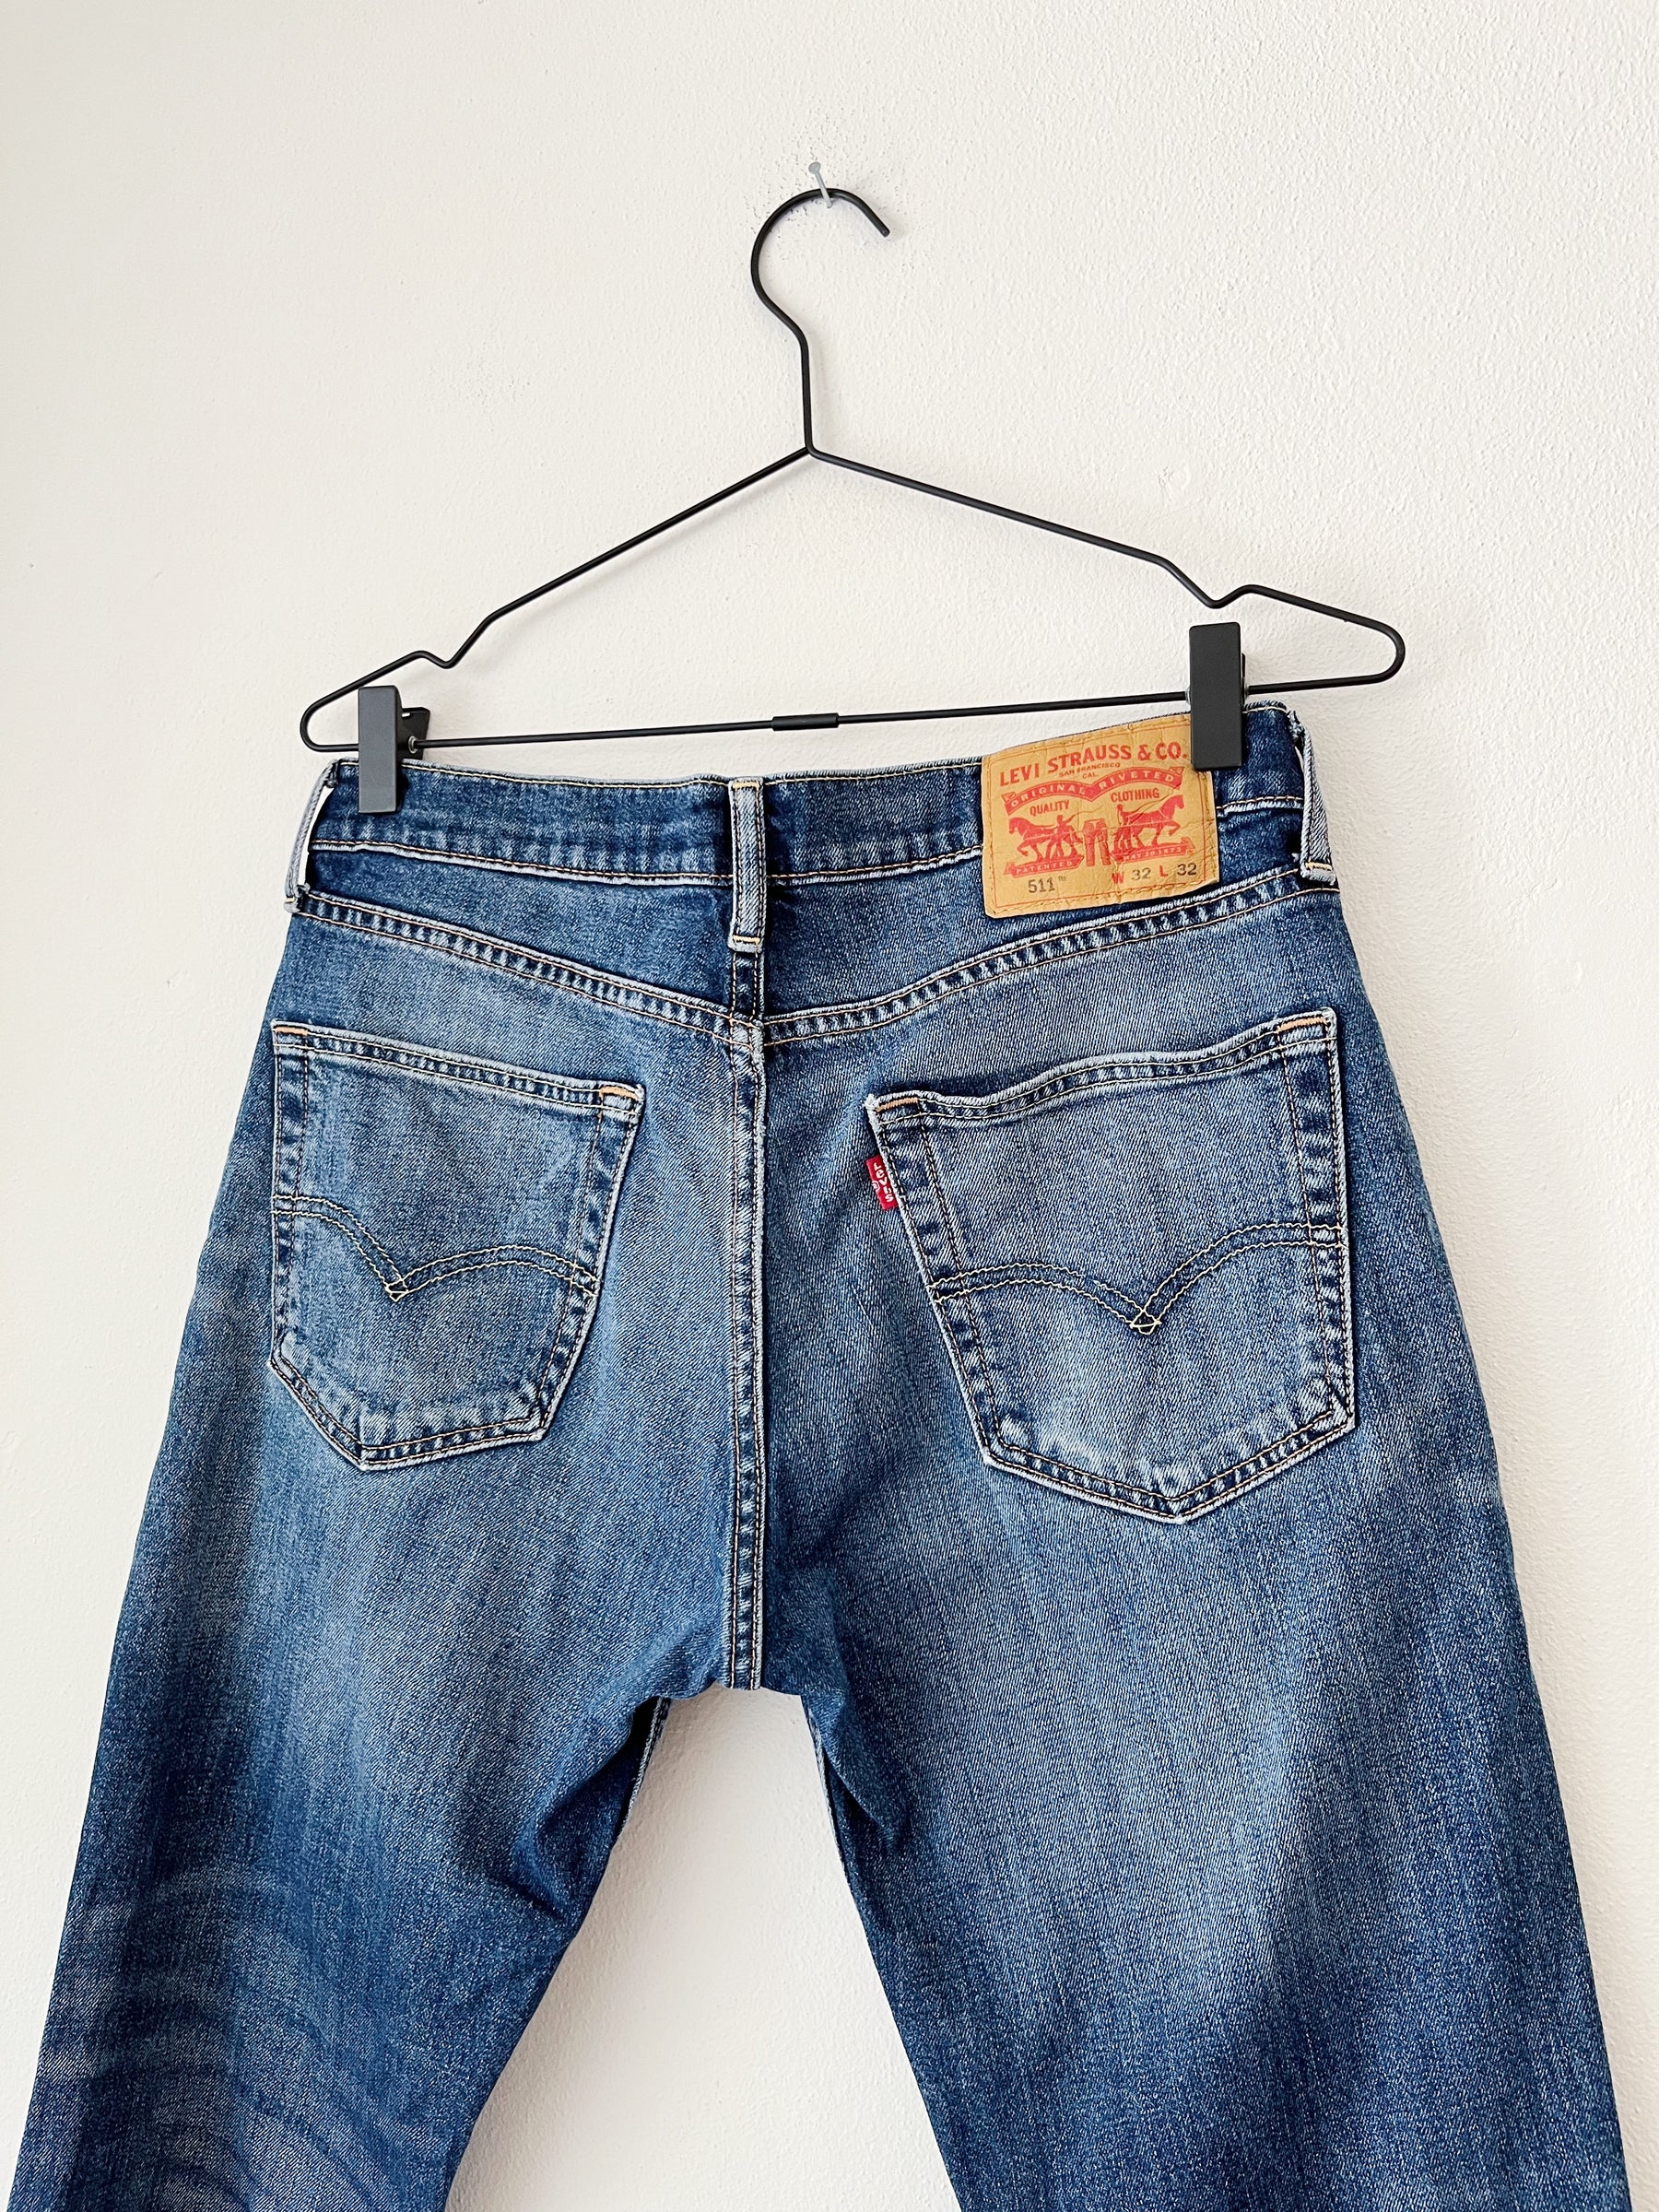 511 Levis jeans